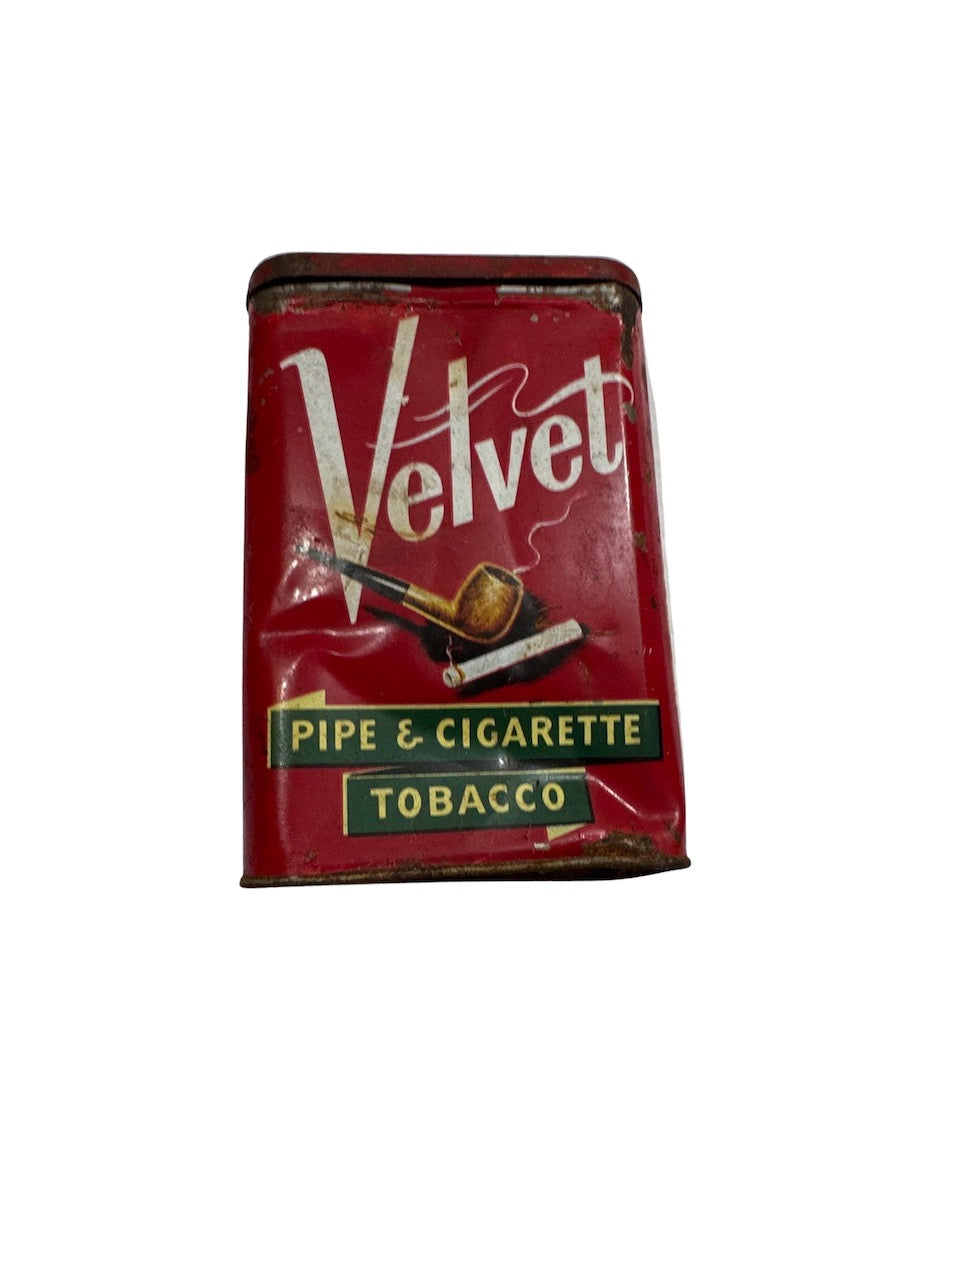 Vintage Velvet Pipe & Cigarette Tobacco tin